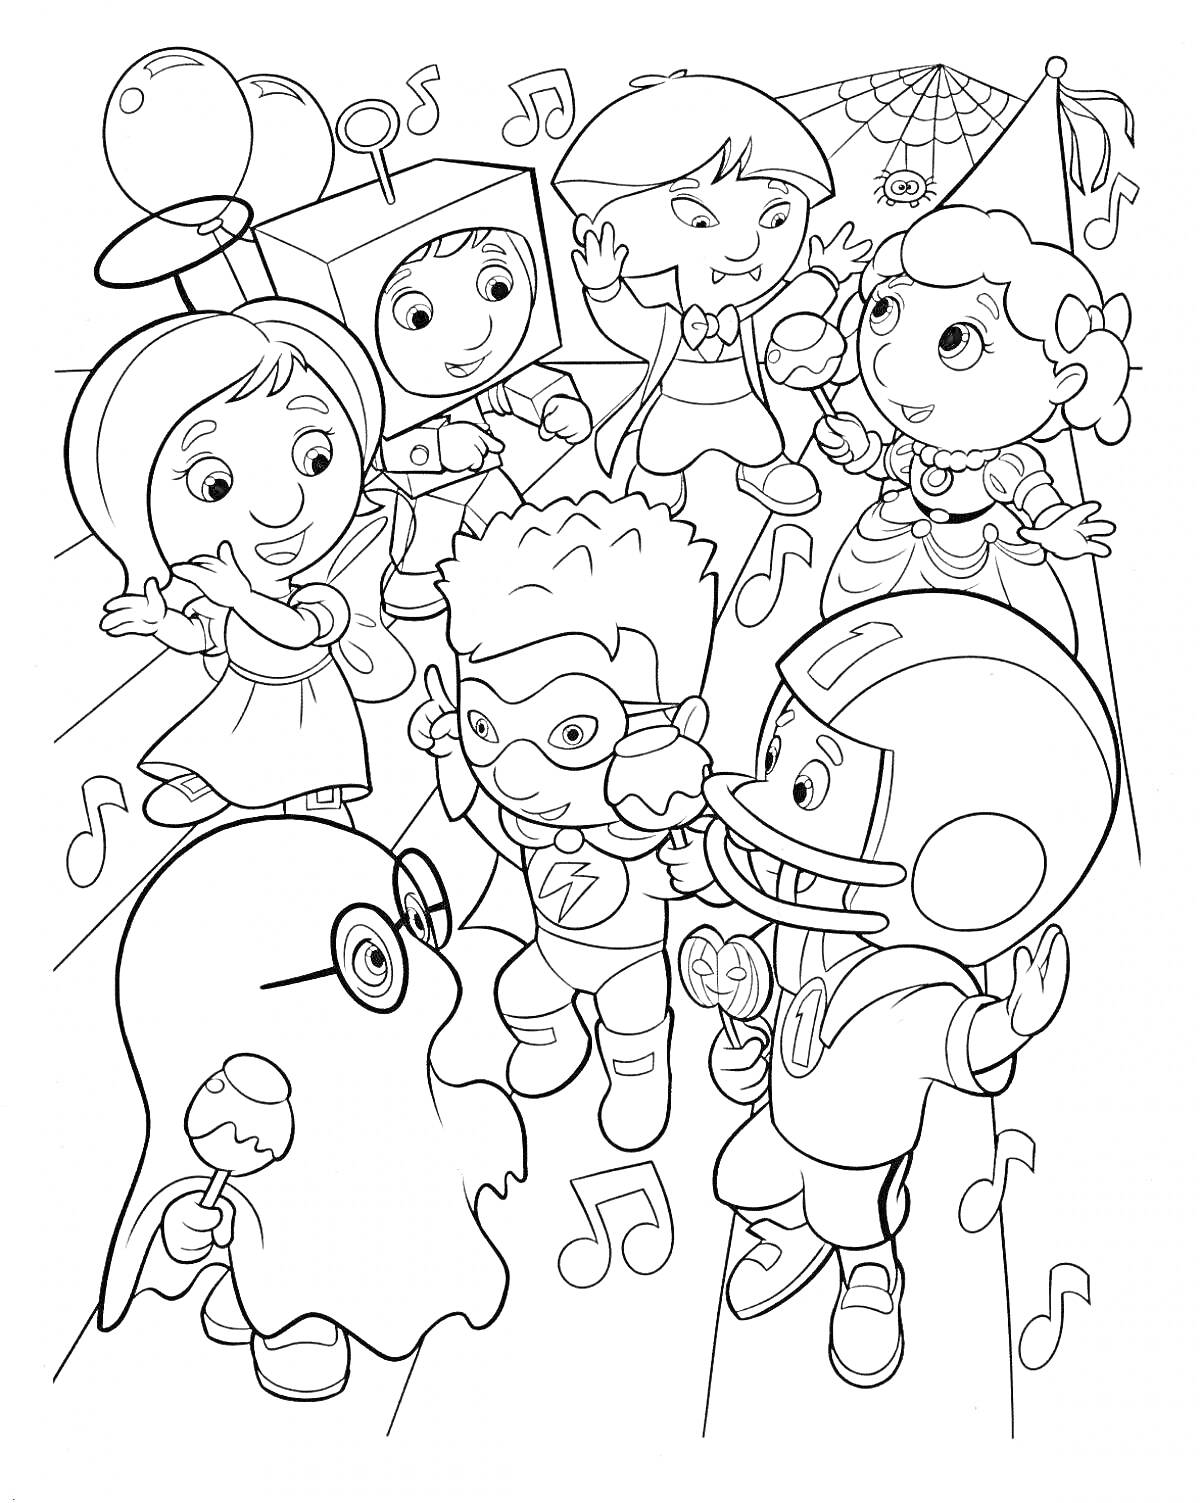 Раскраска Детская маскарадная вечеринка на Хэллоуин с персонажами в костюмах привидения, робота, супергероя, феи, клоуна и футболиста, на фоне нот и паутины.